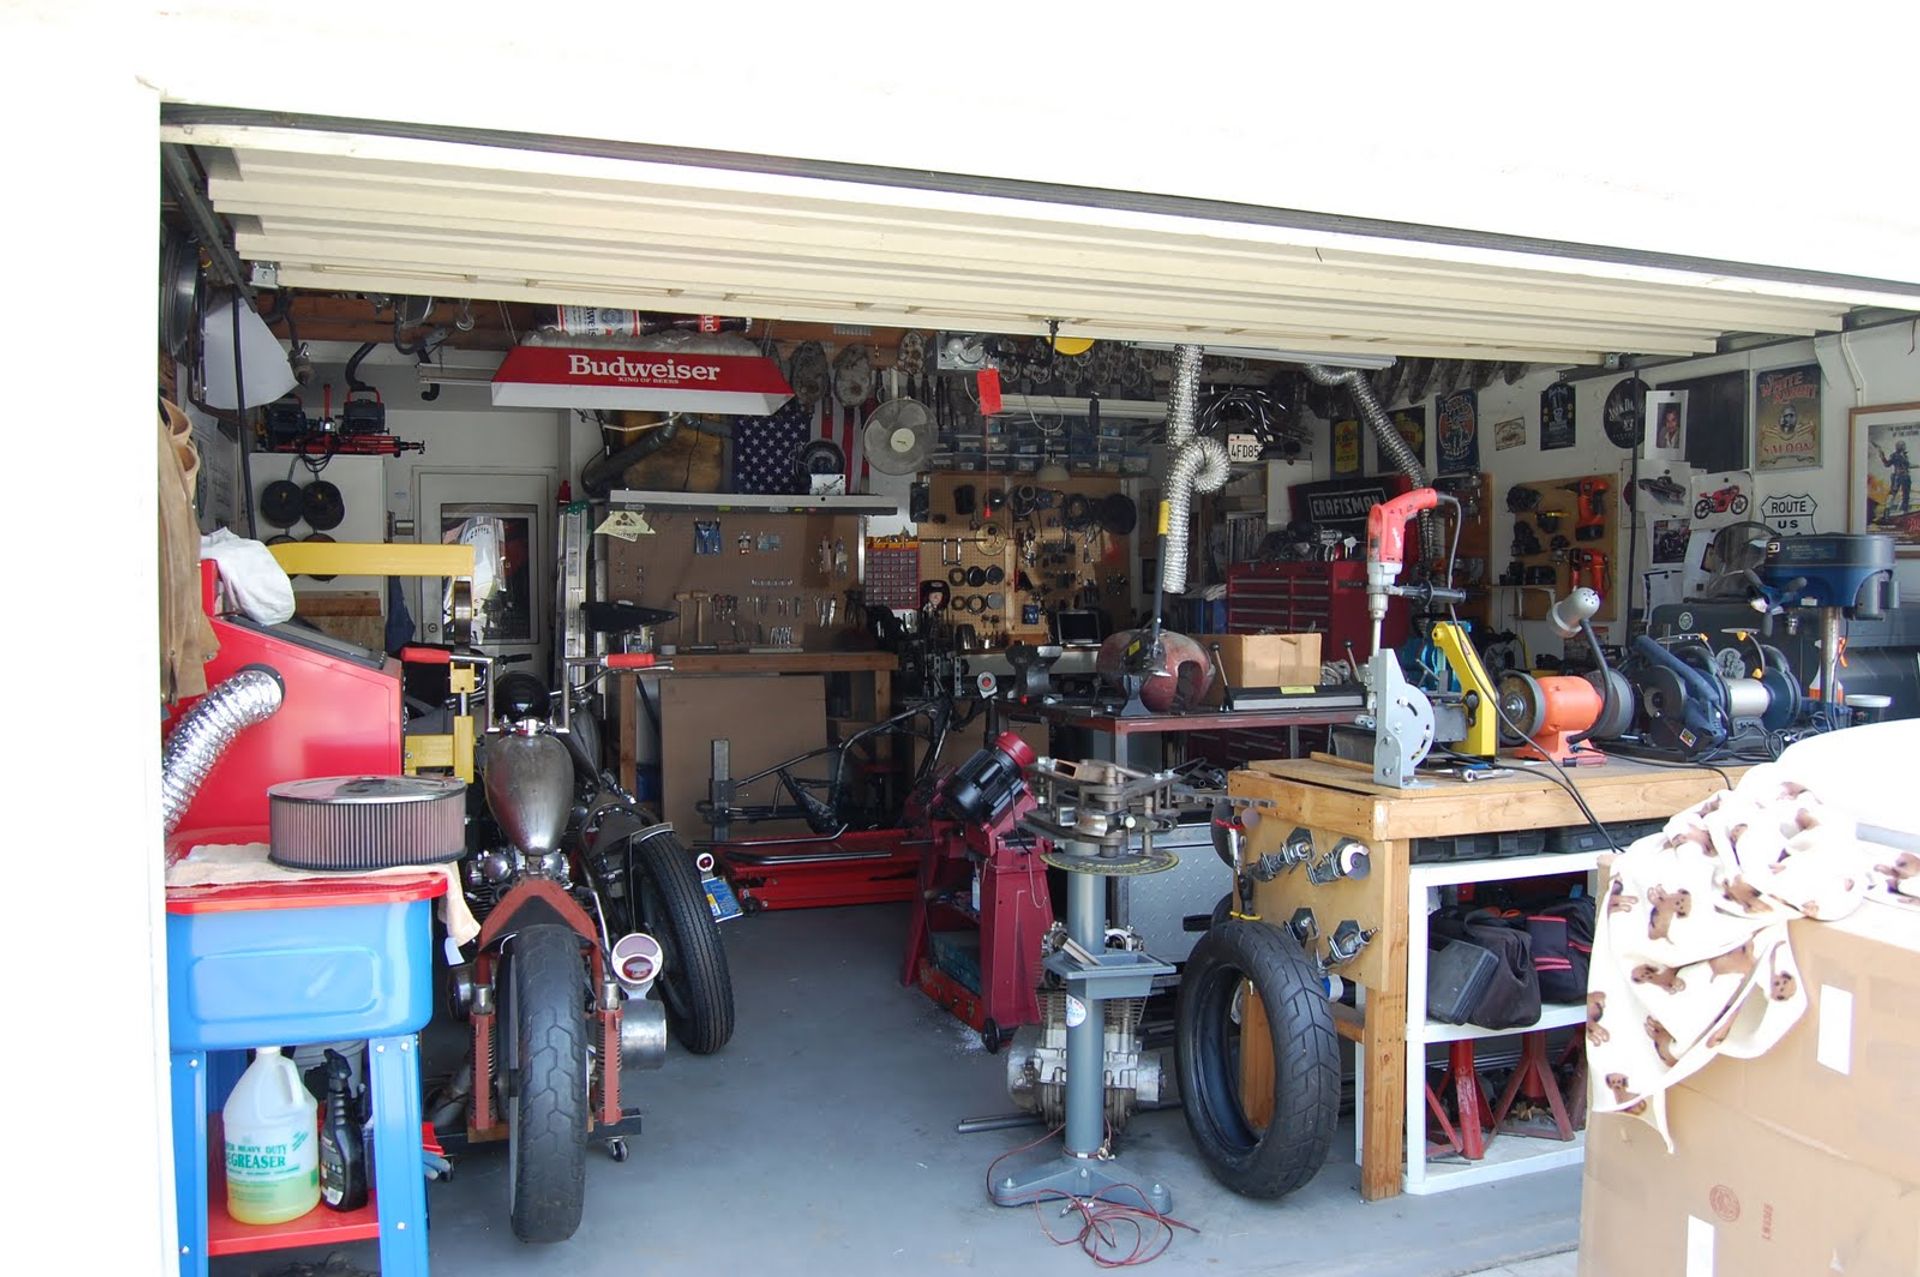 Stuffed garage hoarders gewoonvoorhem hoarder